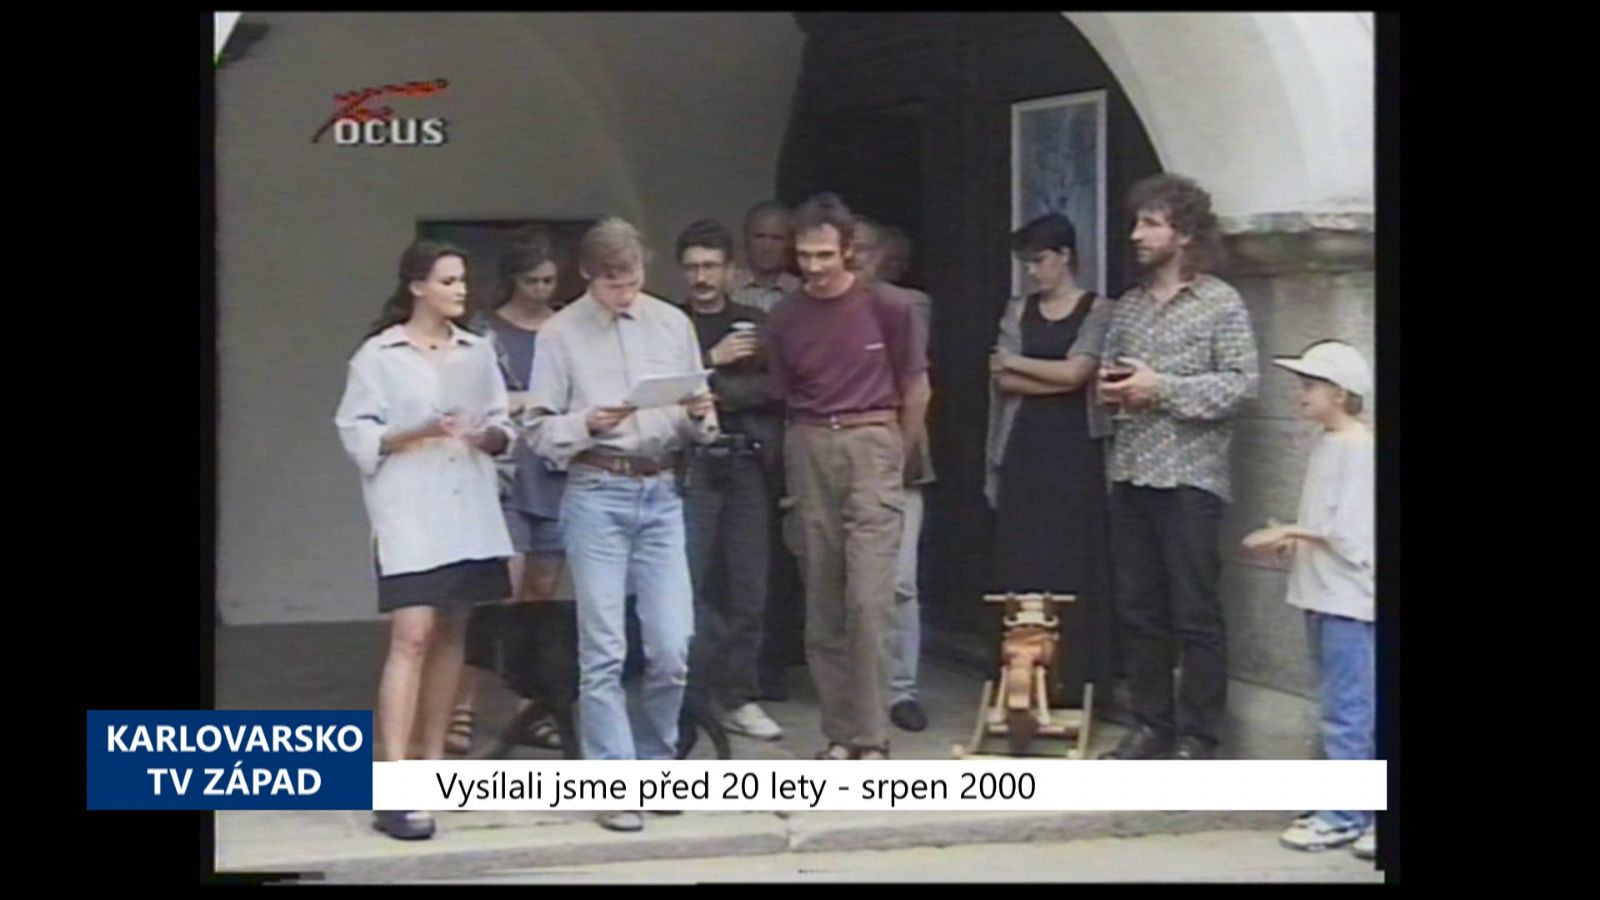 2000 – Ostroh: Výtvarní umělci se setkali na Seebergu (TV Západ) 